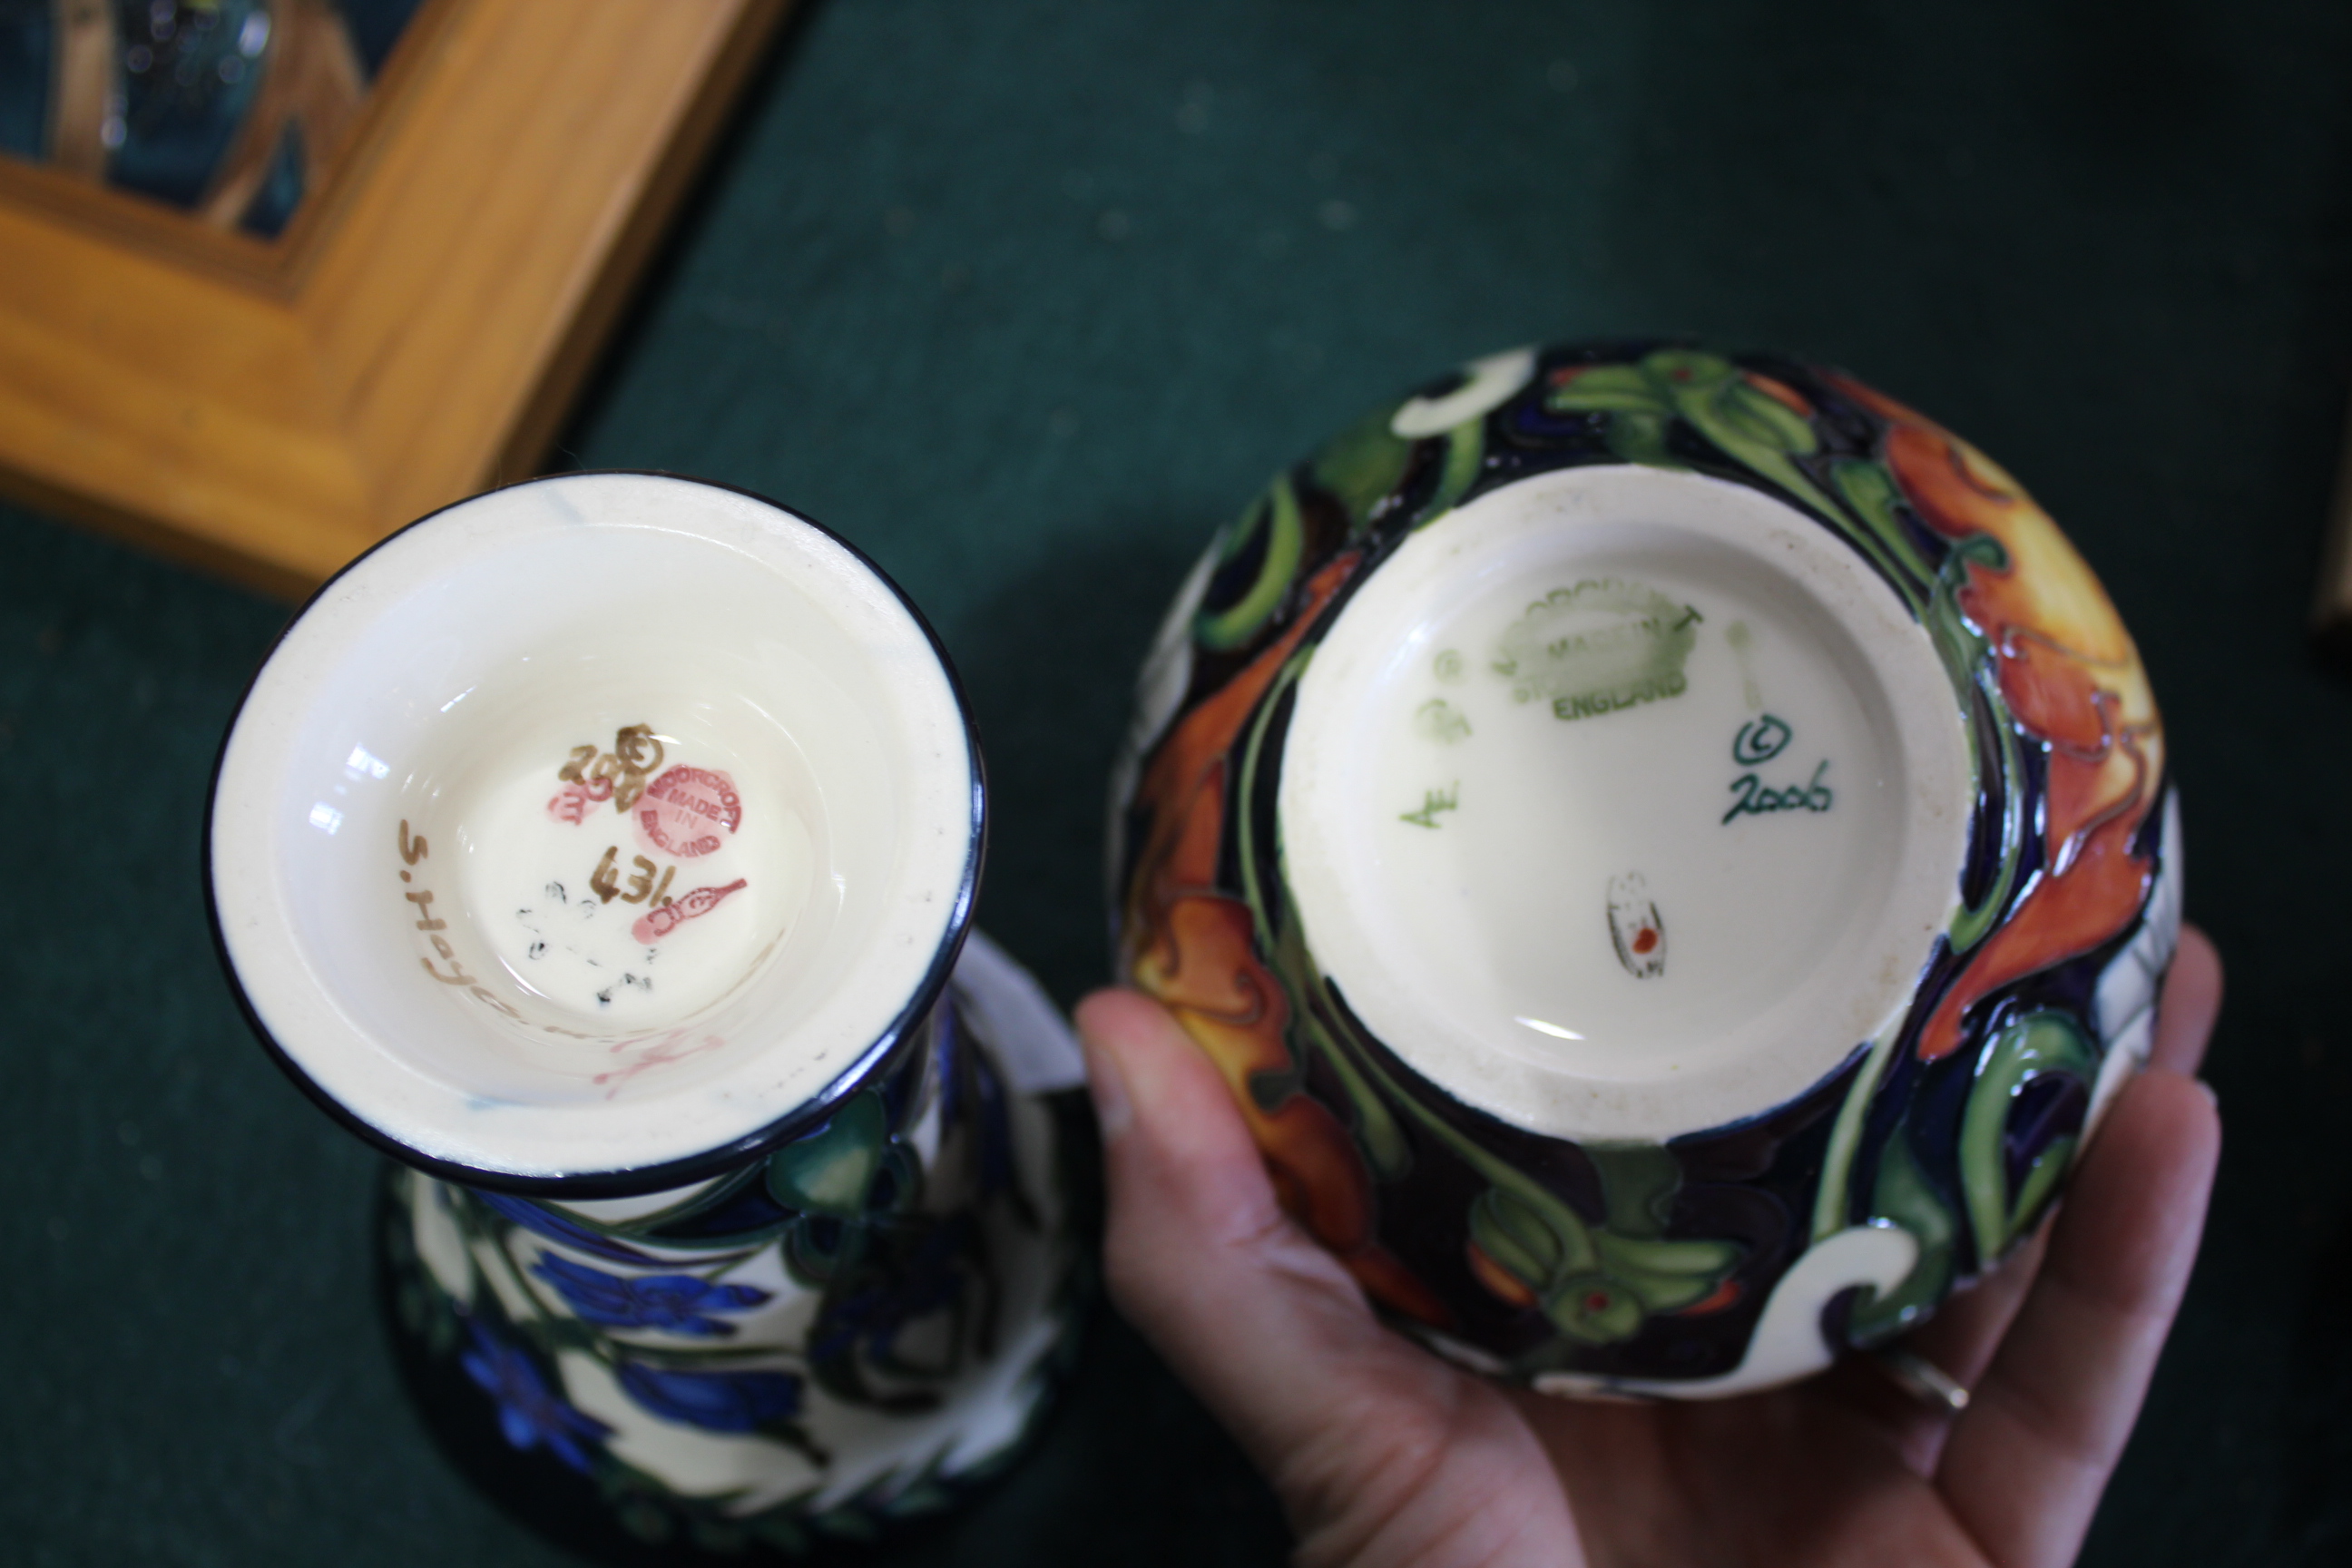 MOORCROFT VASES 4 modern Moorcroft vases including one in the Kaffir Lily design, designed by - Image 3 of 4